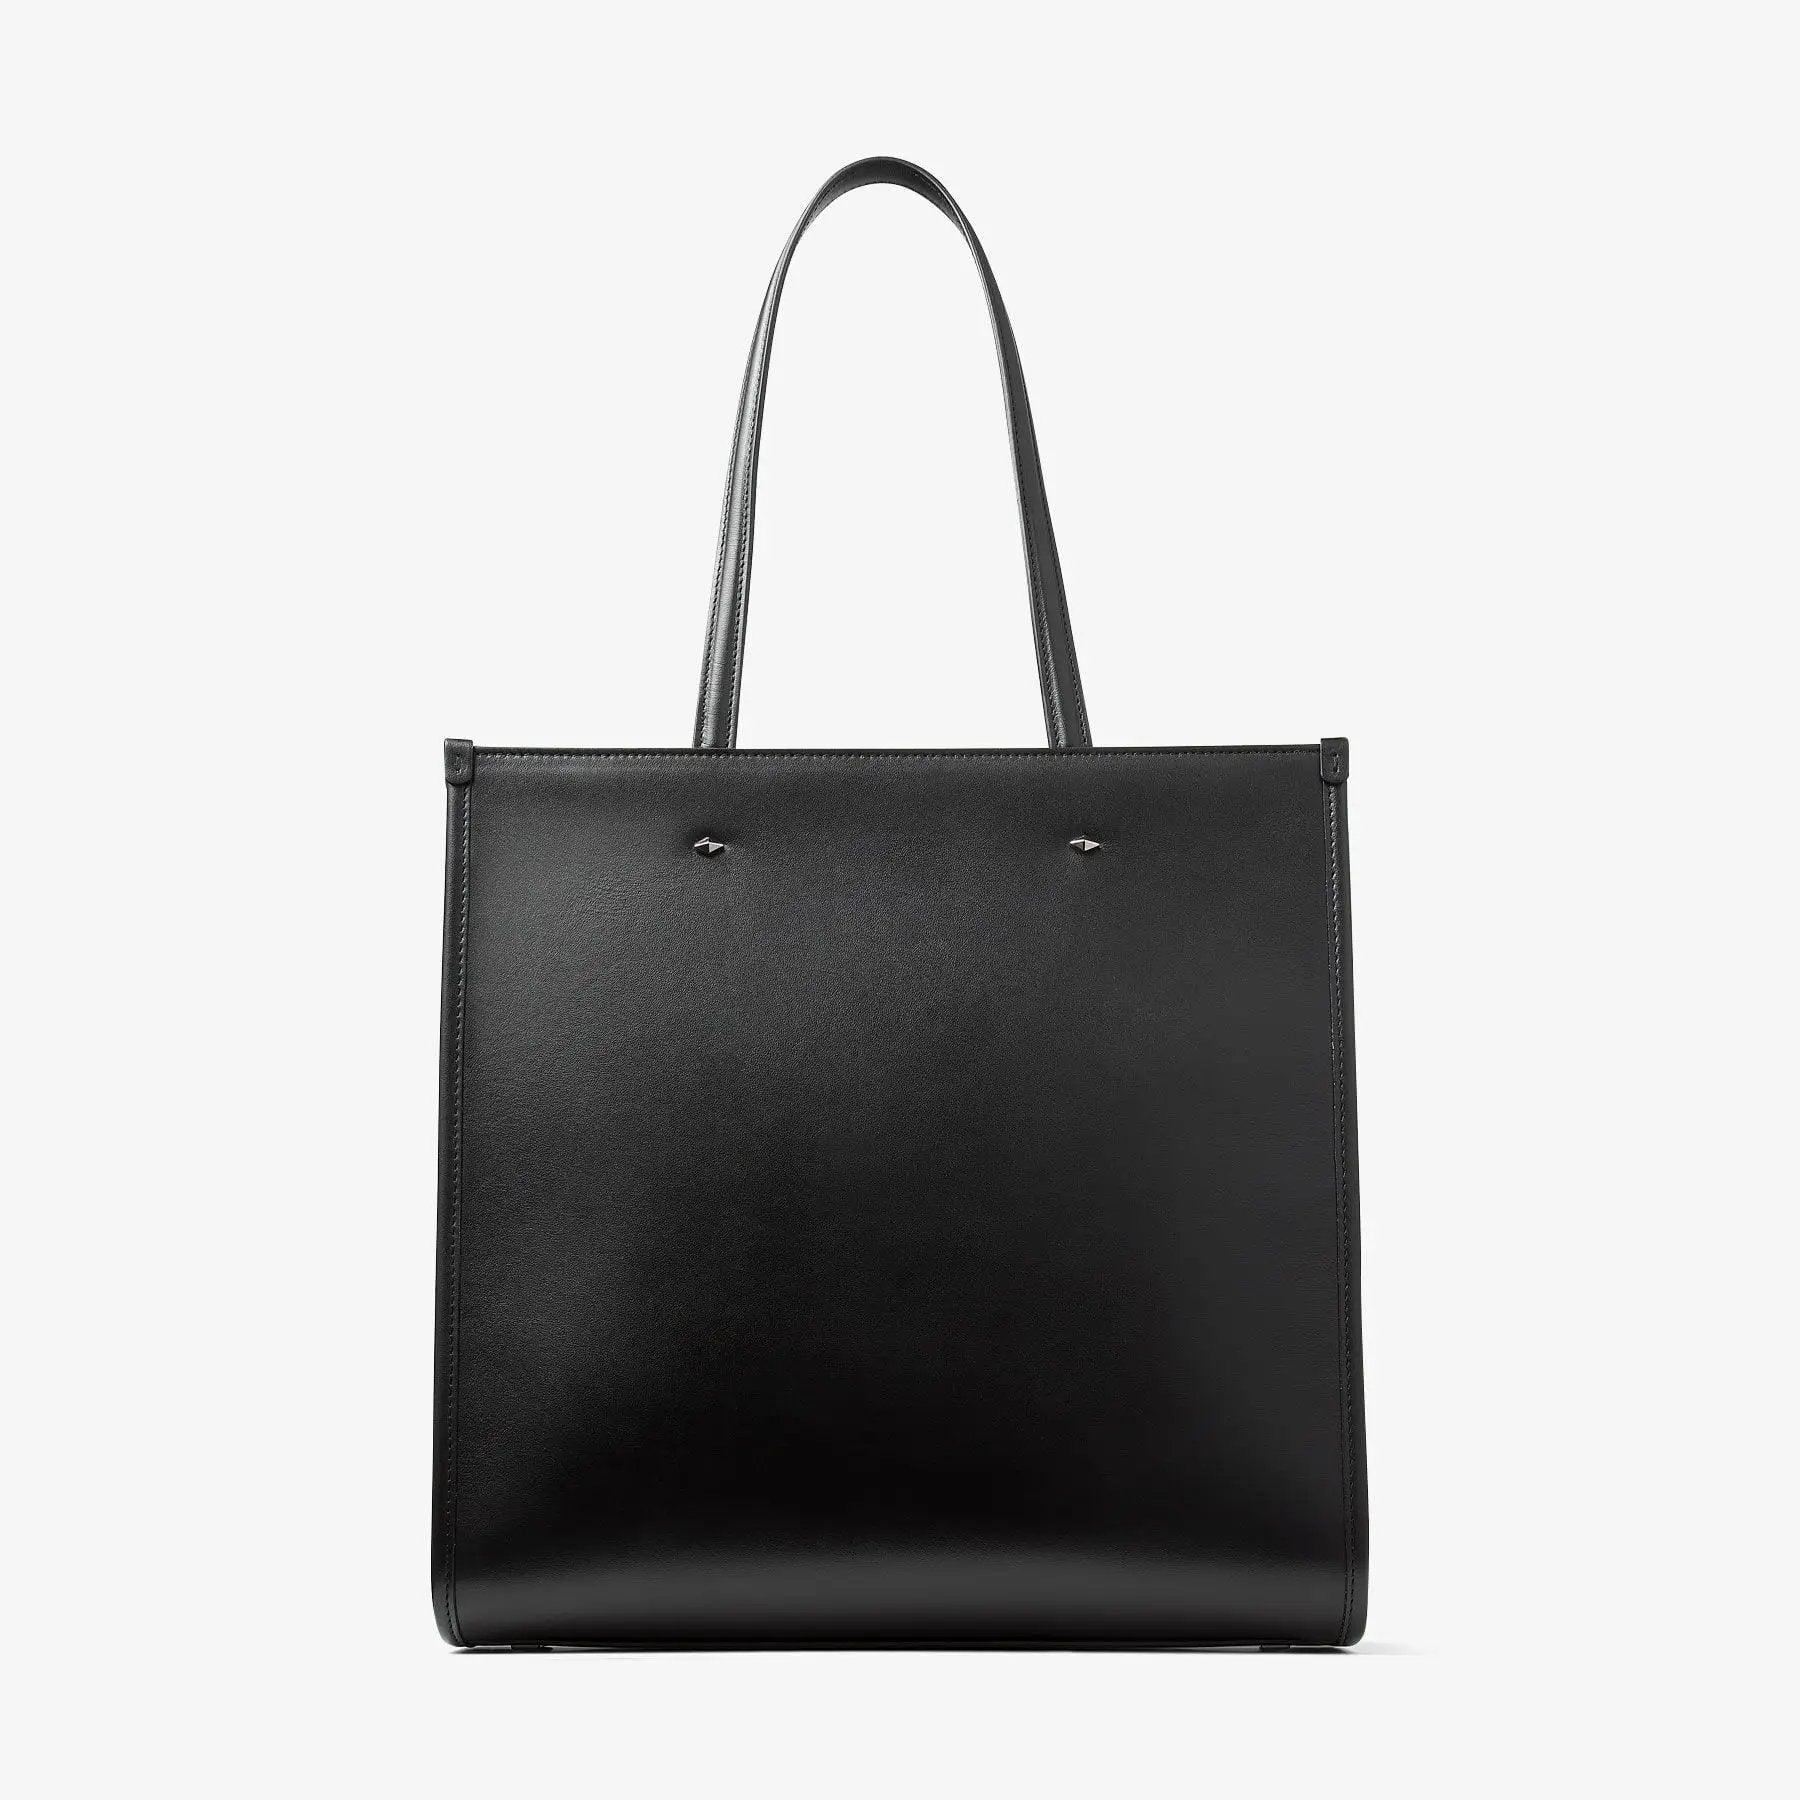 N/S Tote M Bag in Black Handbags JIMMY CHOO - LOLAMIR